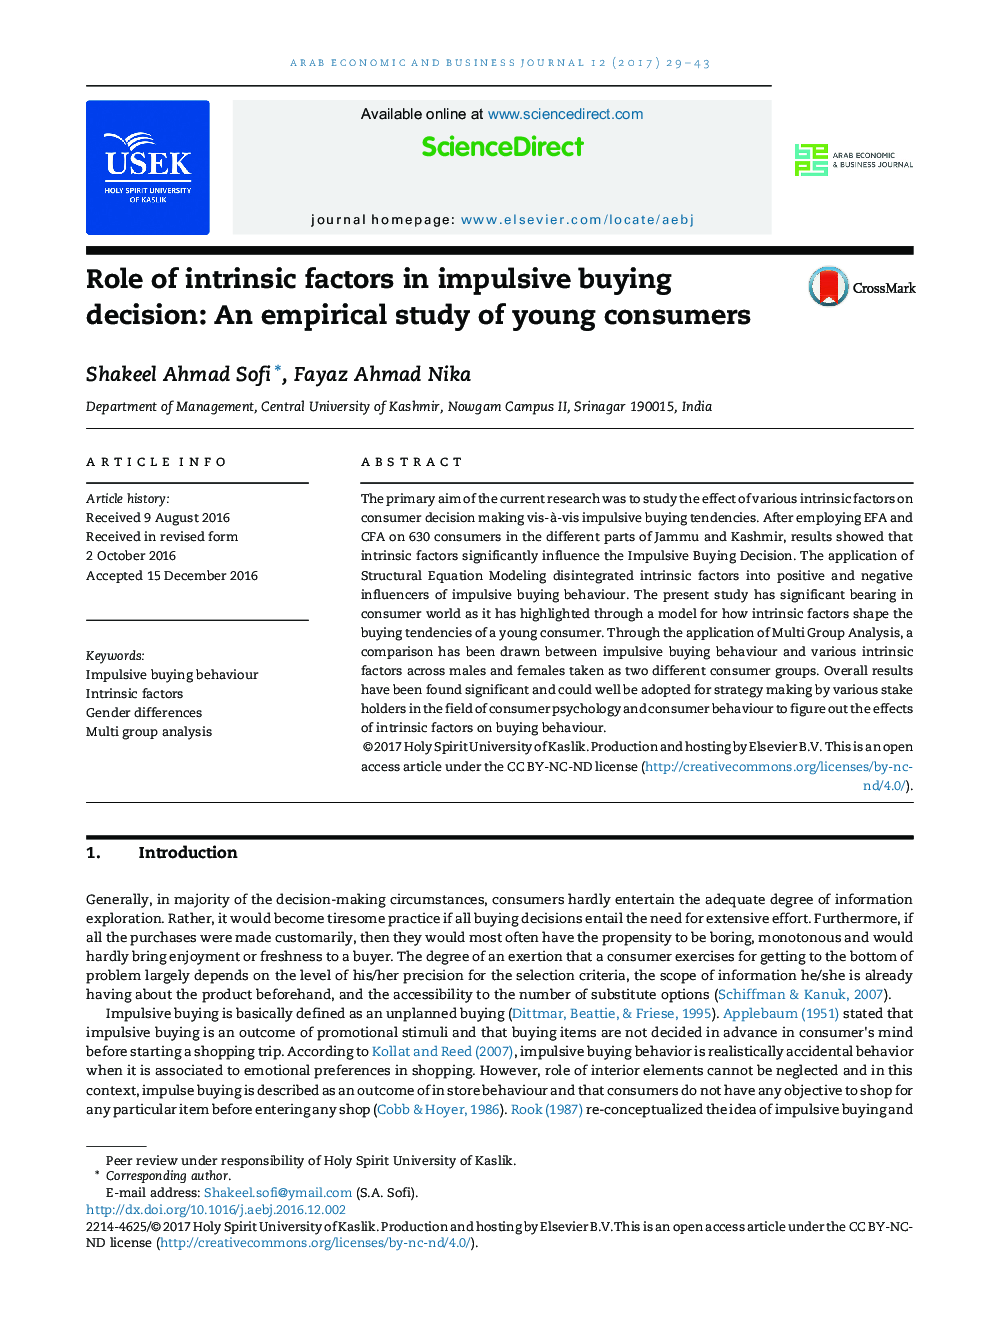 نقش عوامل ذاتی در تصمیم گیری خرید مداوم: یک مطالعه تجربی مصرف کنندگان جوان 